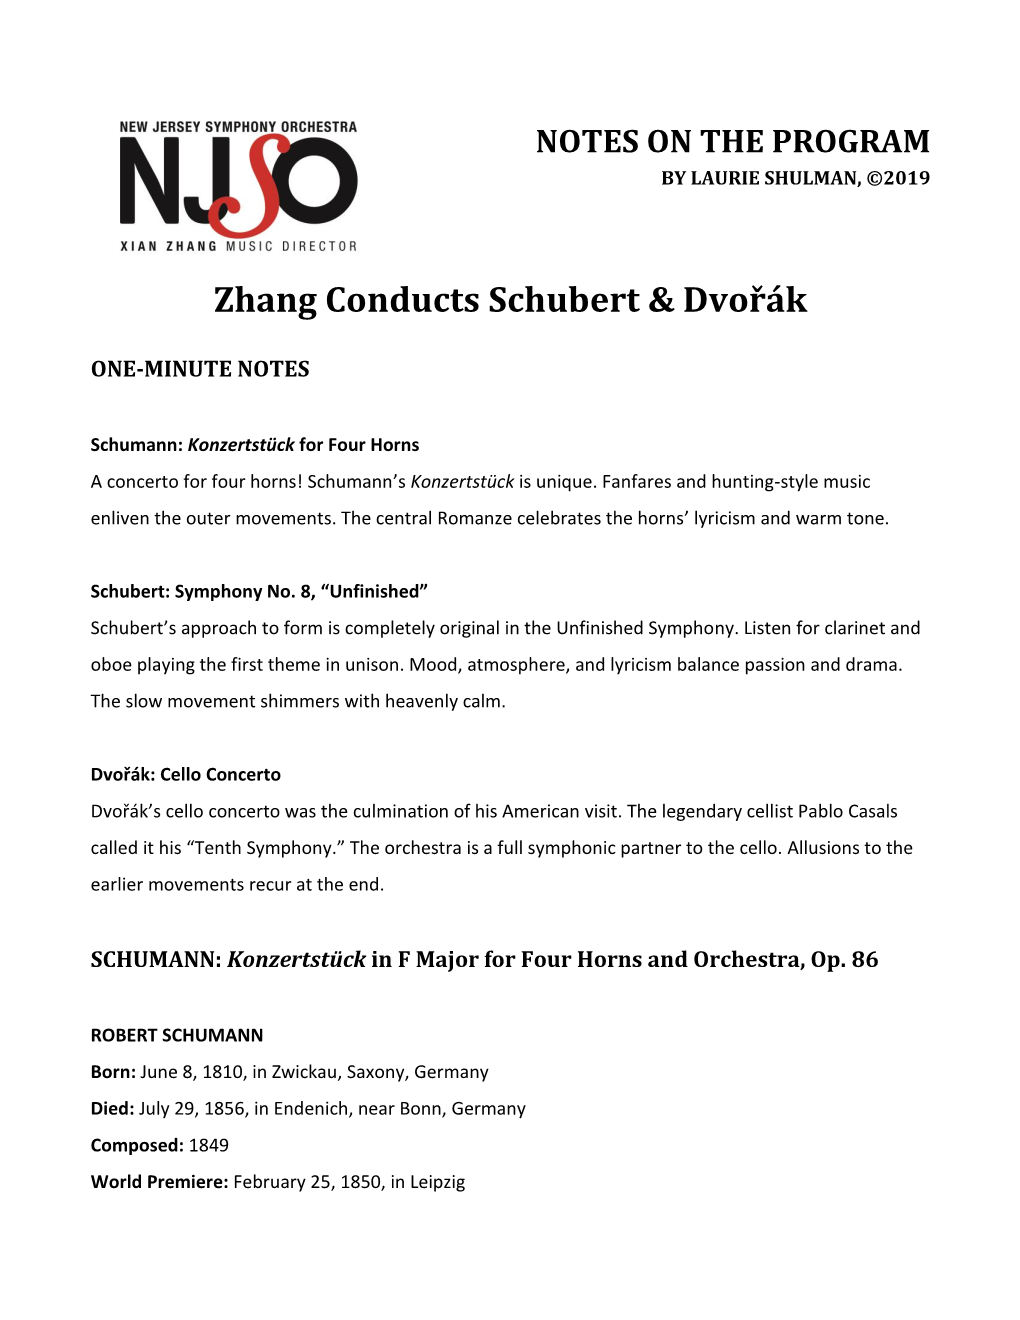 Zhang Conducts Schubert & Dvořák